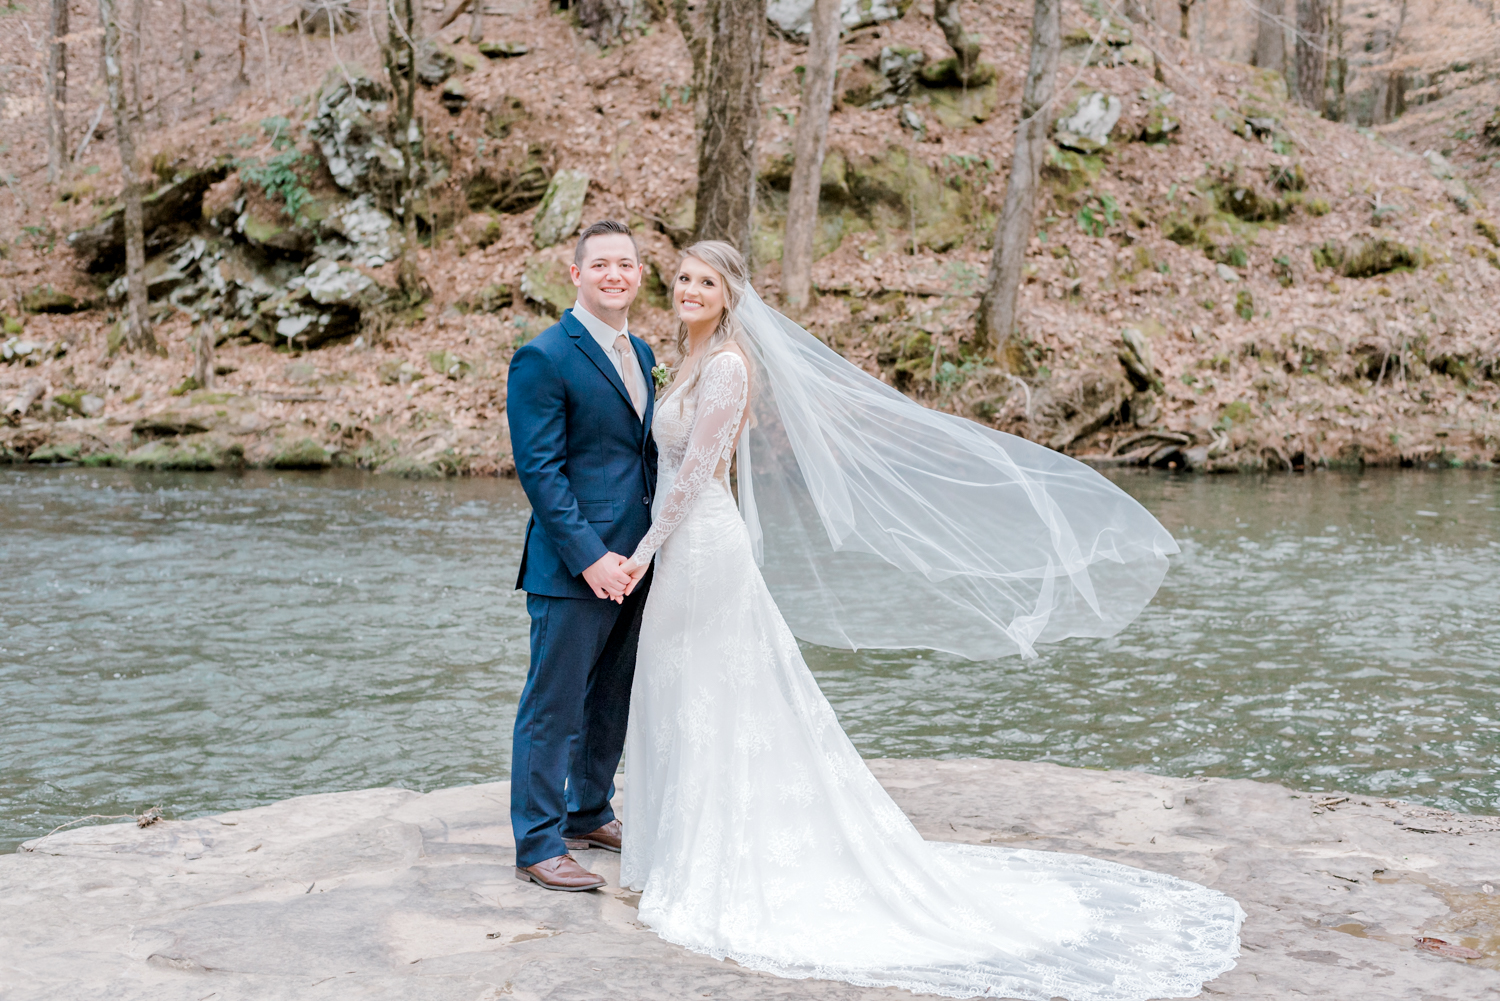 Swann lake stables creek platform bride and groom